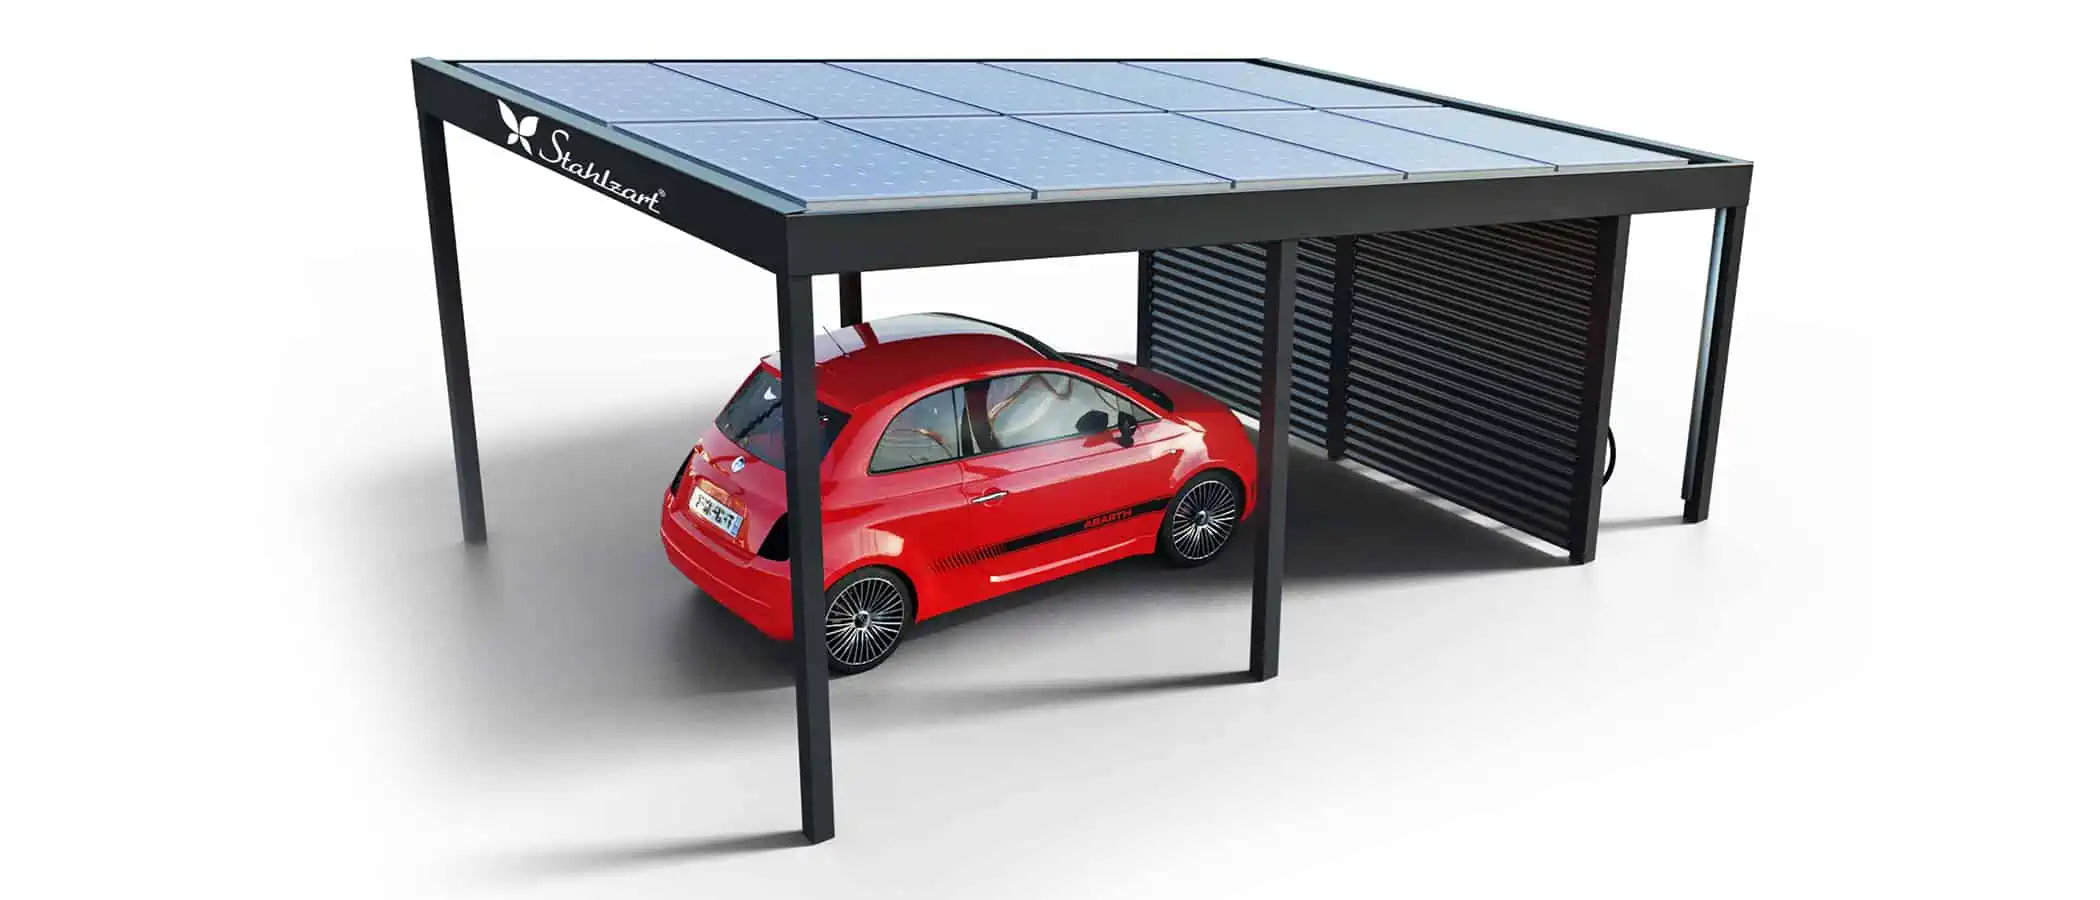 solar-carport-mit-pultdach-carports-solarcarport-pultdach-carportdach-design-strom-angebot-photovoltaikanlage-module-solardach-dachflaeche-metall-stahl-einzelcarport-mit-schuppen-offen-stahlzart